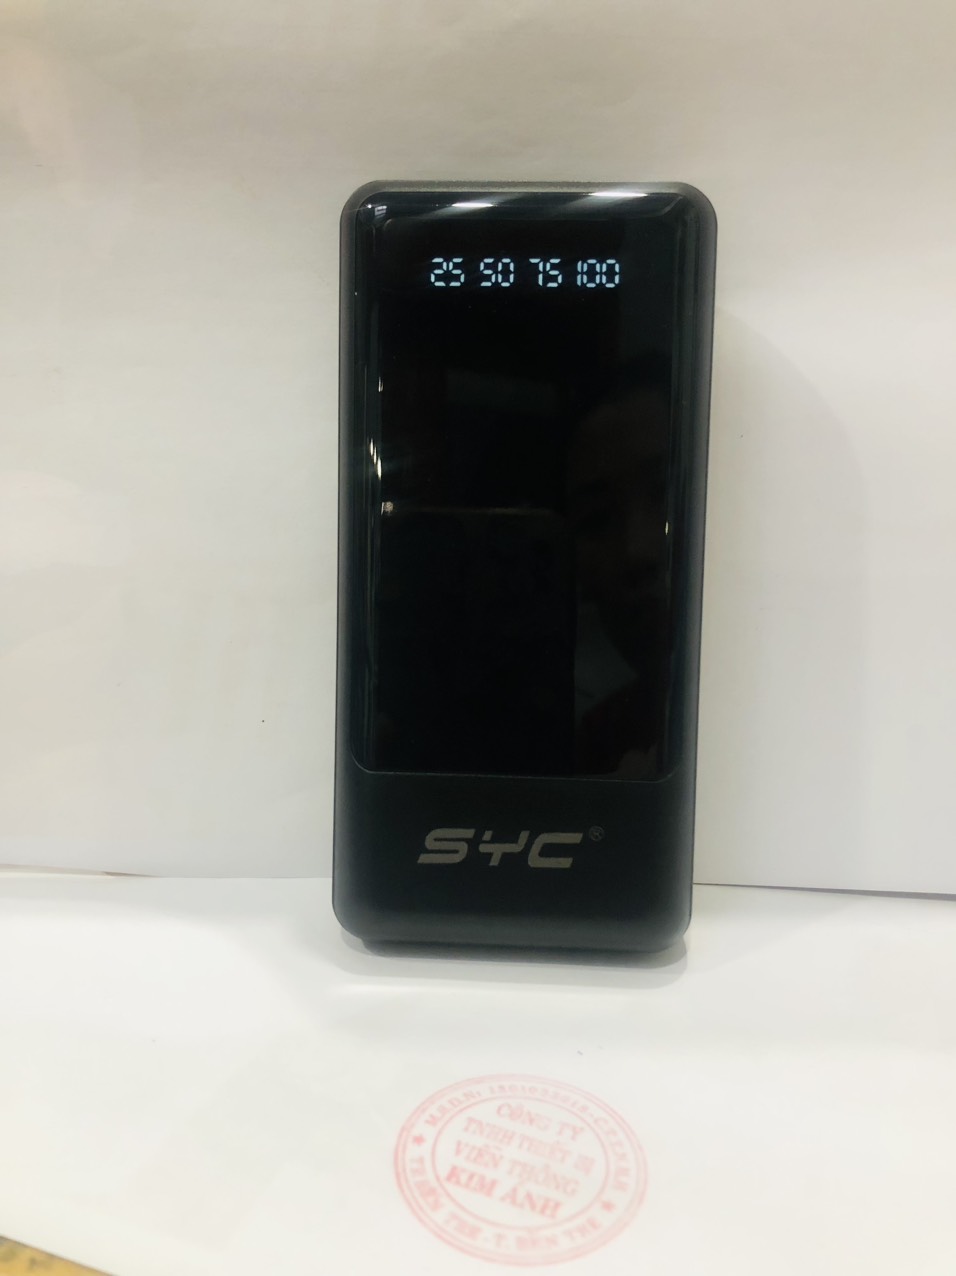 Pin sạc dự phòng hàng chính hãng SYC S140, dung lượng 20000mAh có màn hình hiển thị pin, kèm 4 cáp sạc tiện lợi khi di chuyển